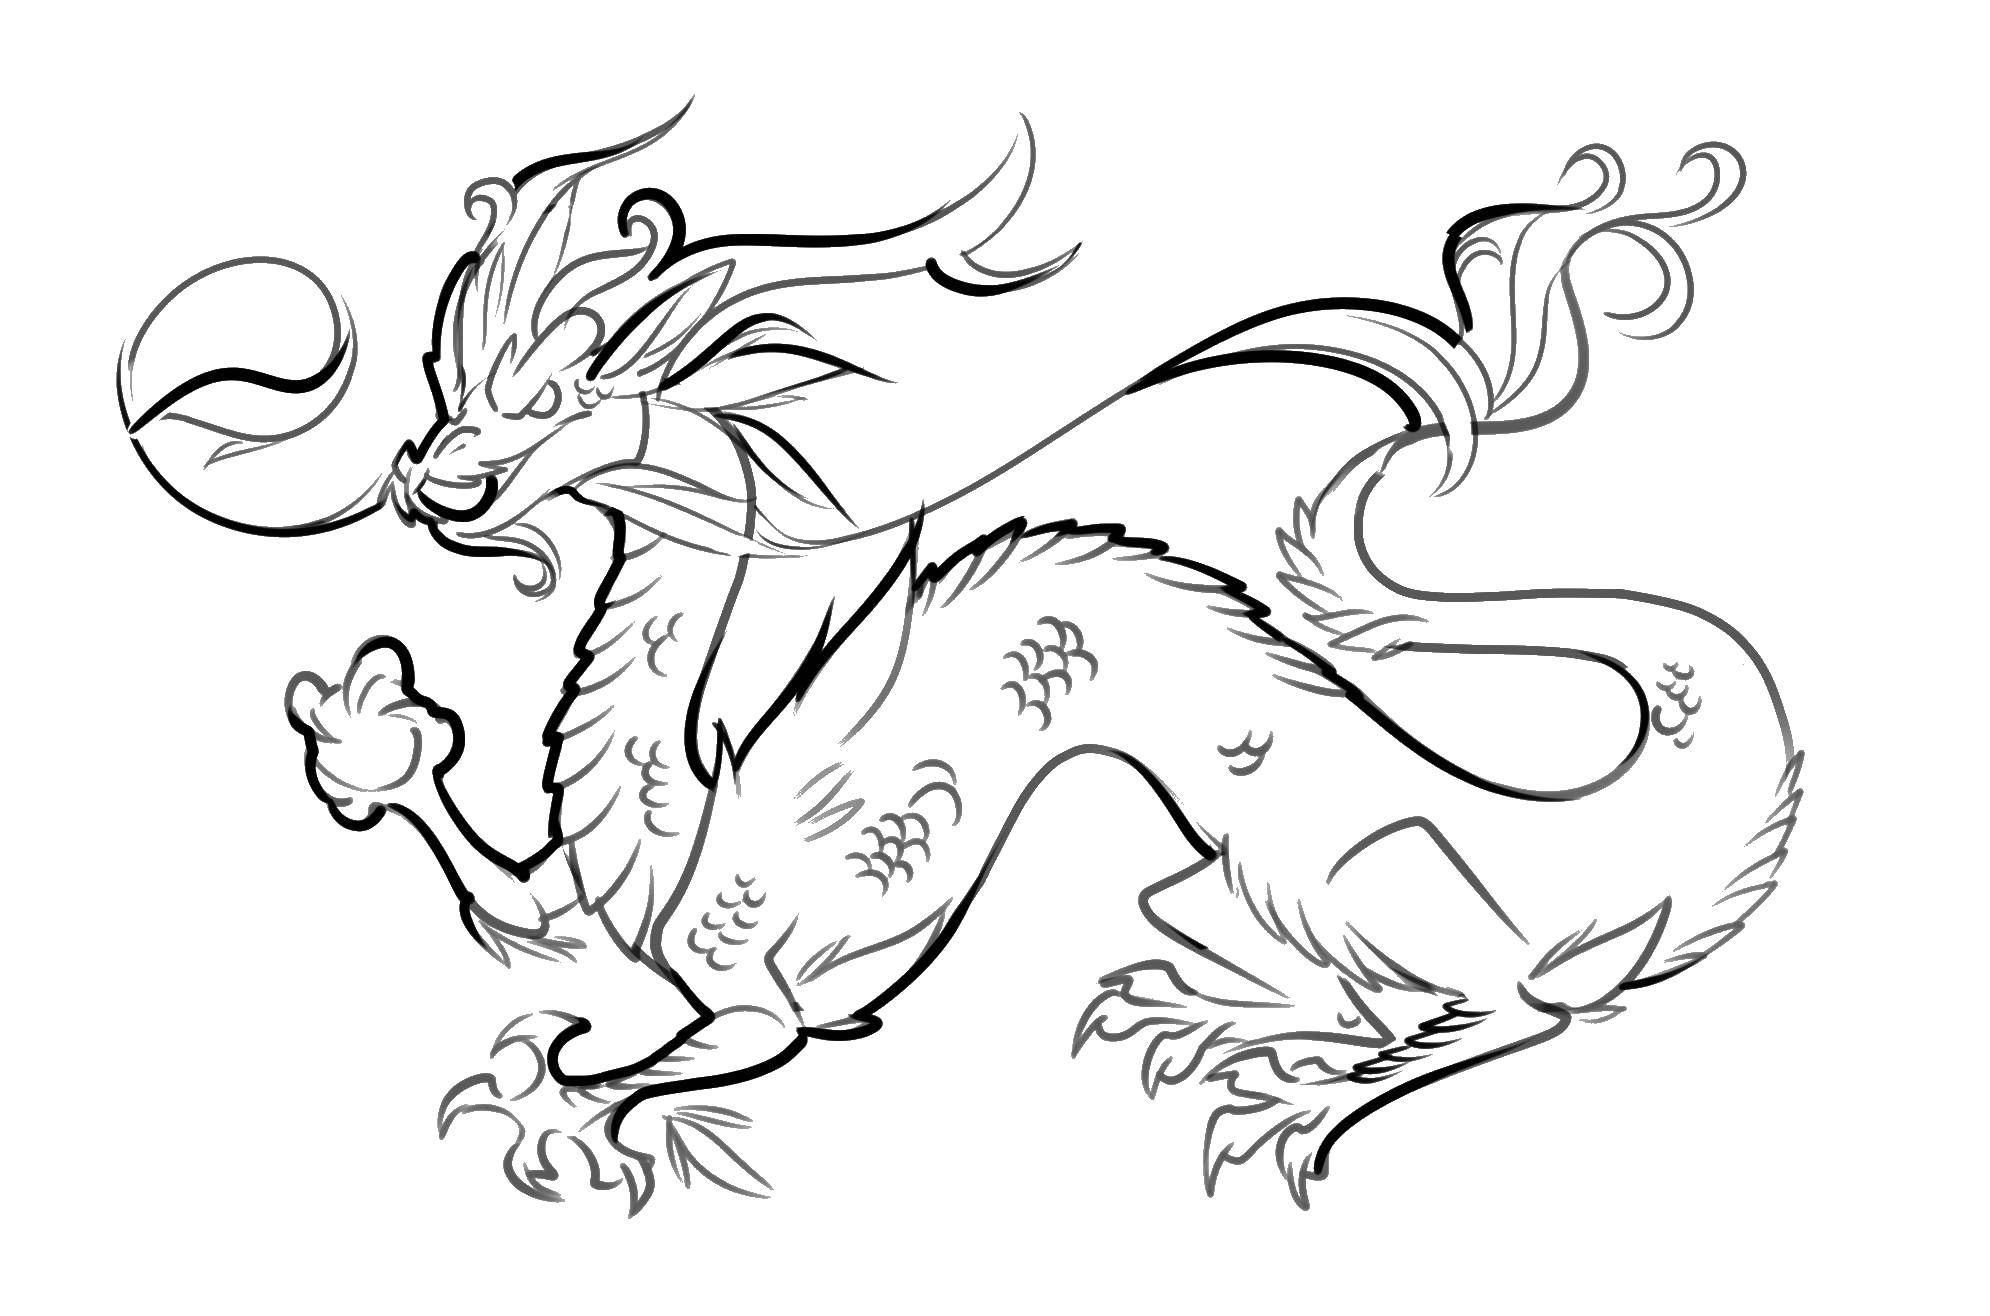 Coloring Китайский дракон. Category Религия. Tags:  дракон, хвост.